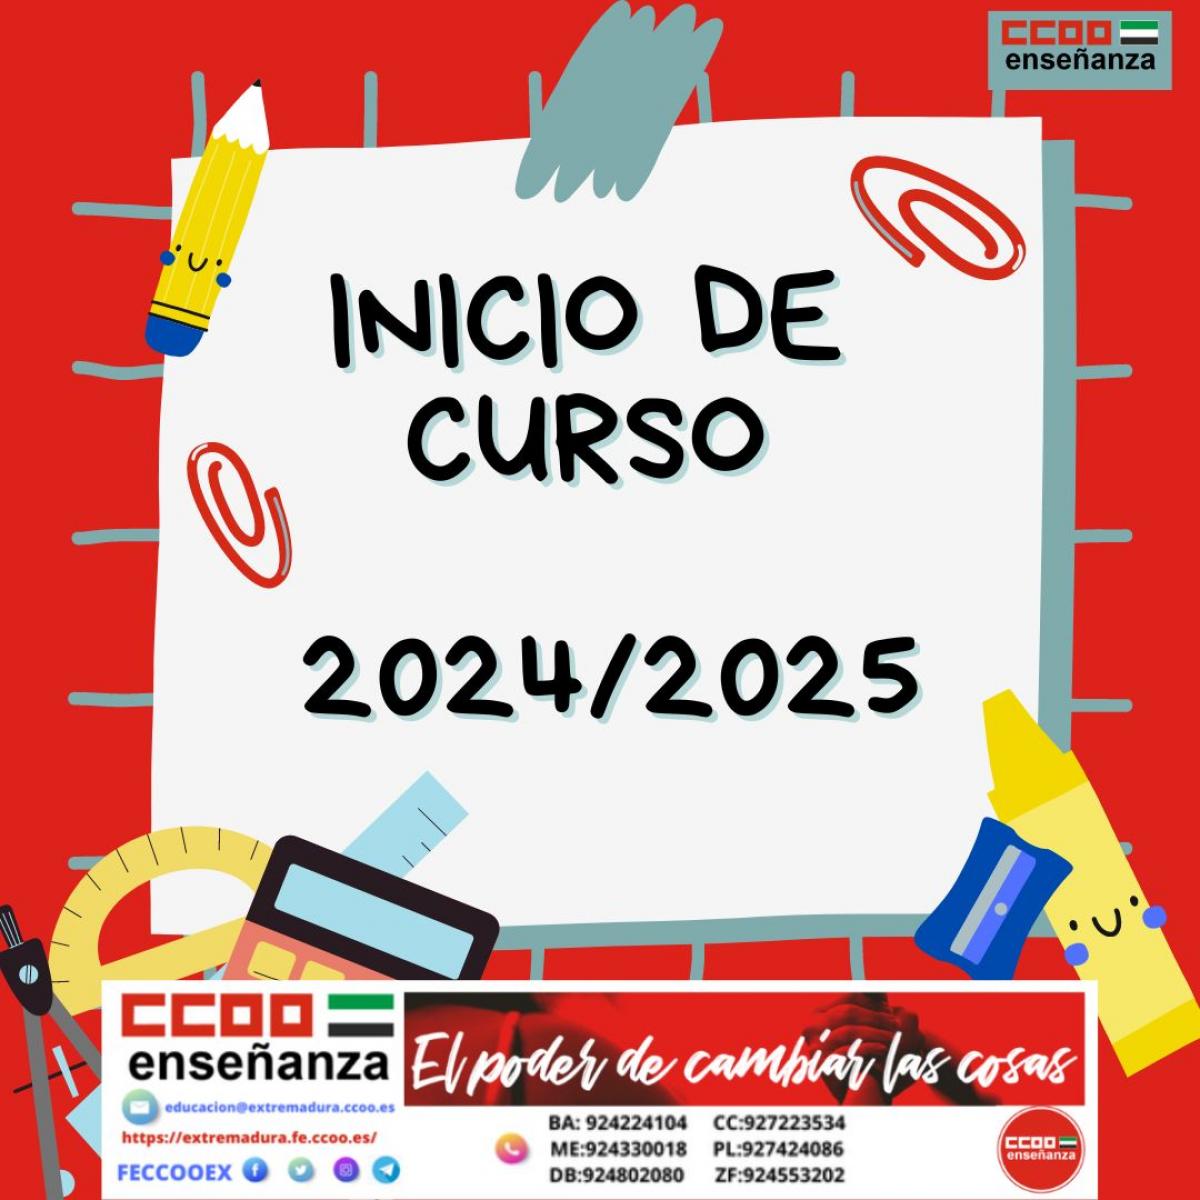 INICIO DE CURSO 2024/2025